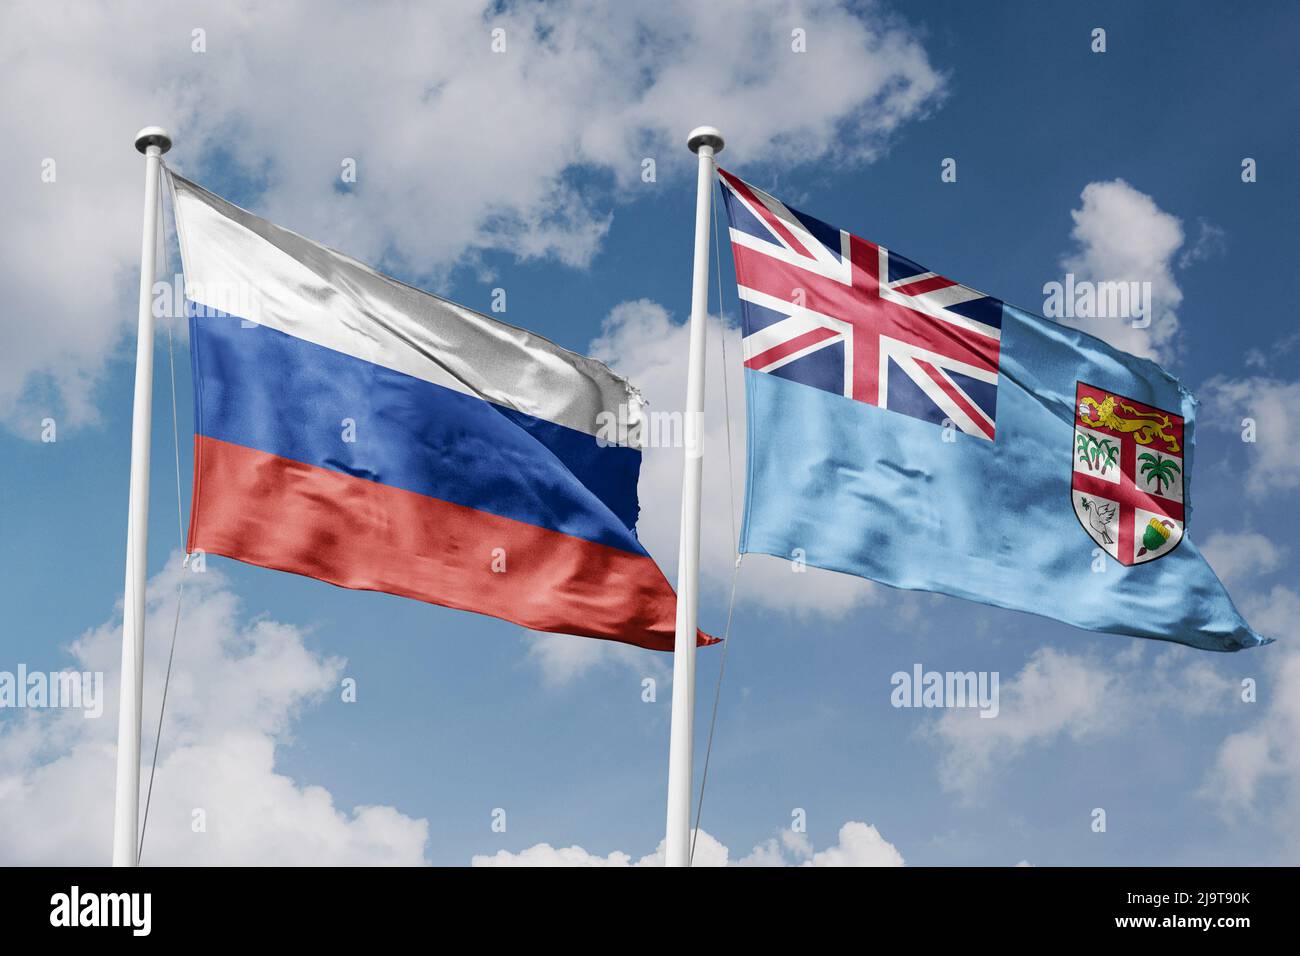 Russie et Fidji deux drapeaux sur les mâts de drapeaux et fond bleu ciel nuageux Banque D'Images